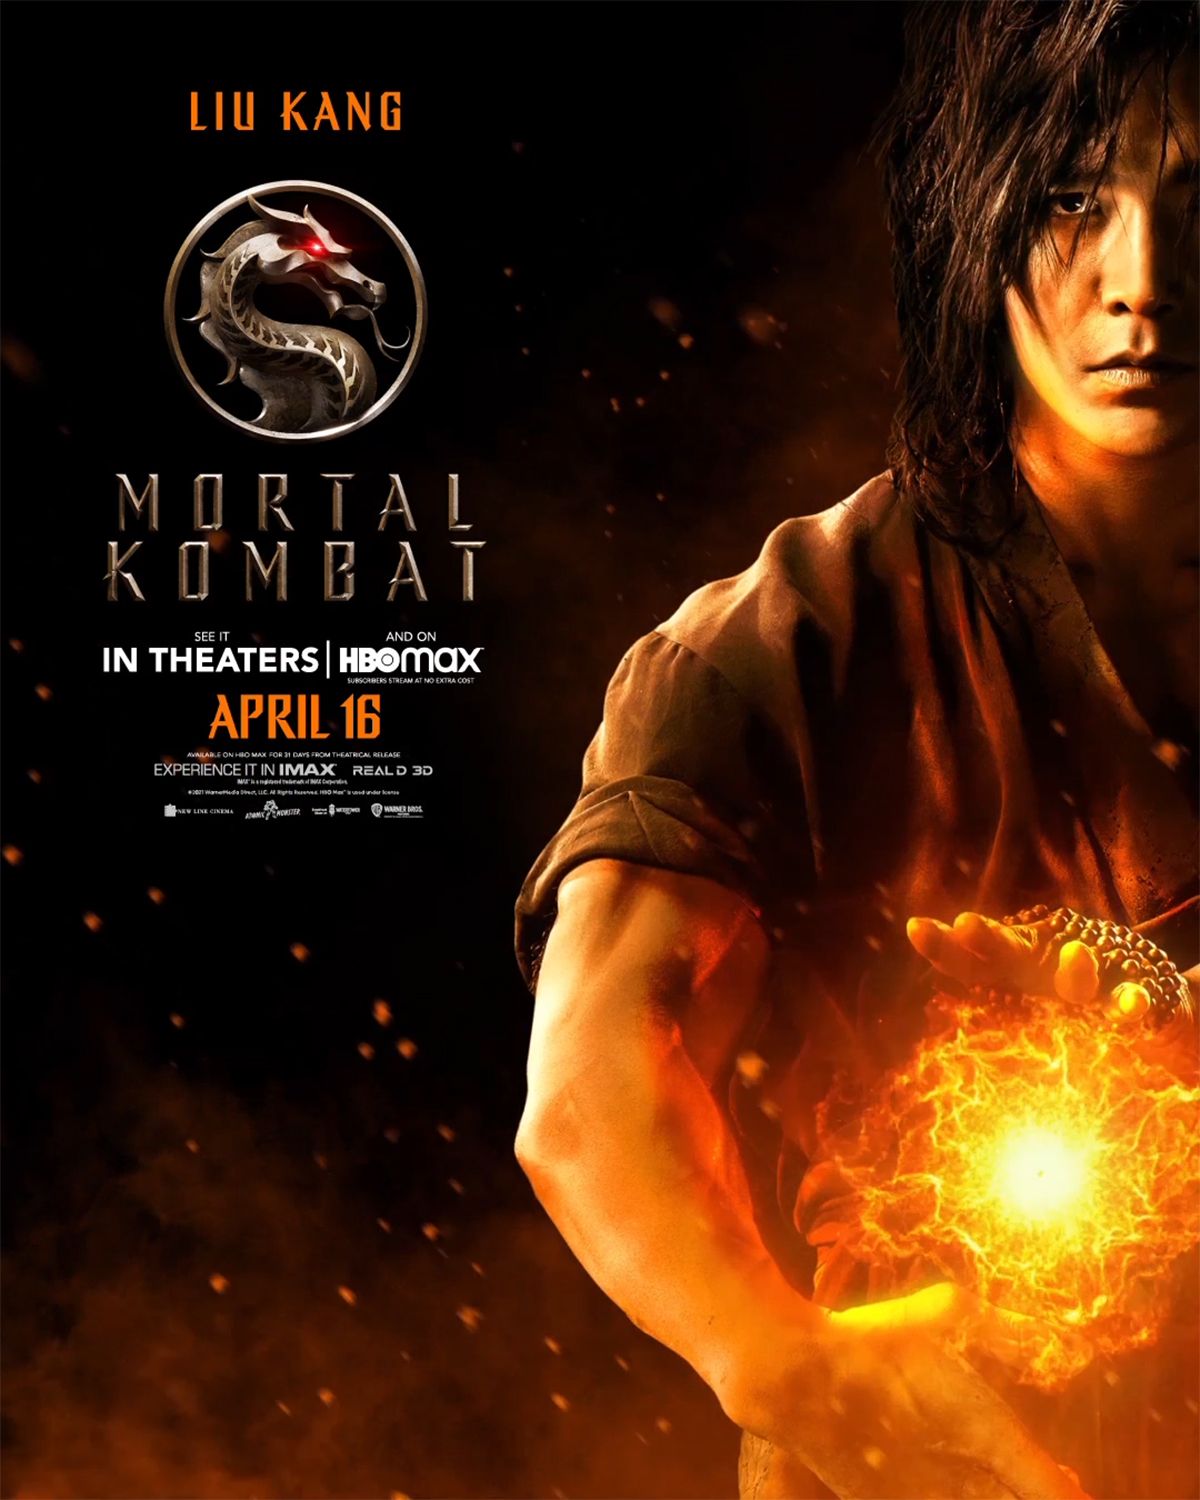 Liu Kang character poster for Mortal Kombat movie